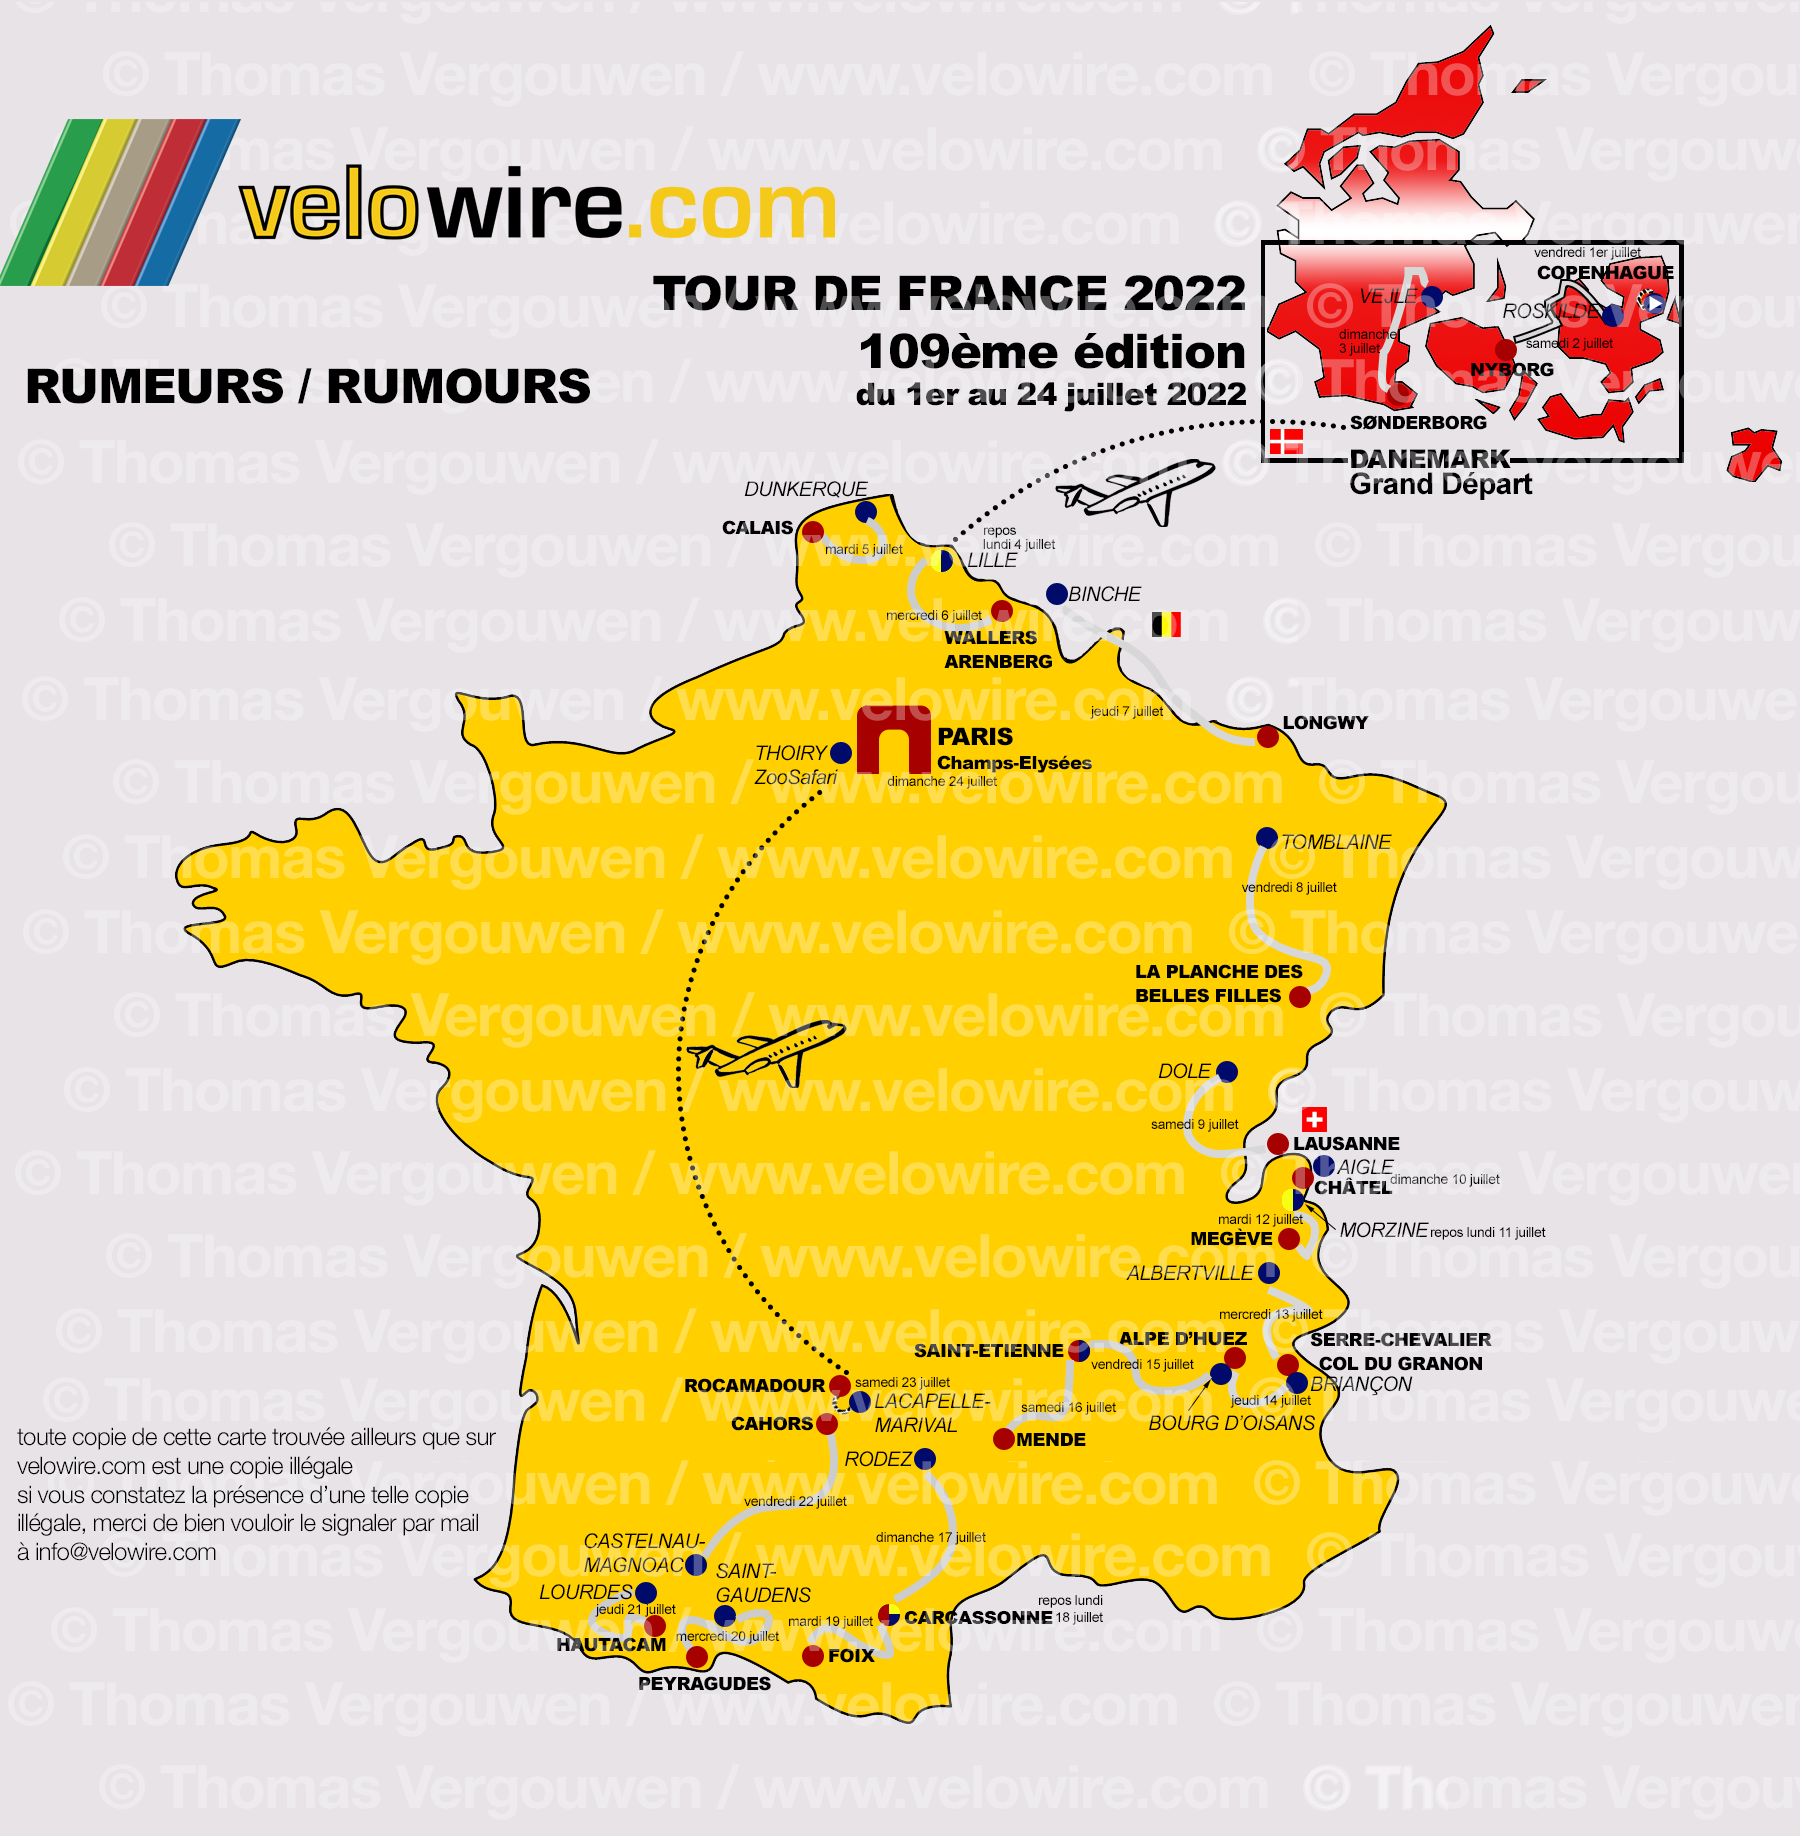 [Tour de France 2022] Last rumors before official route announcement